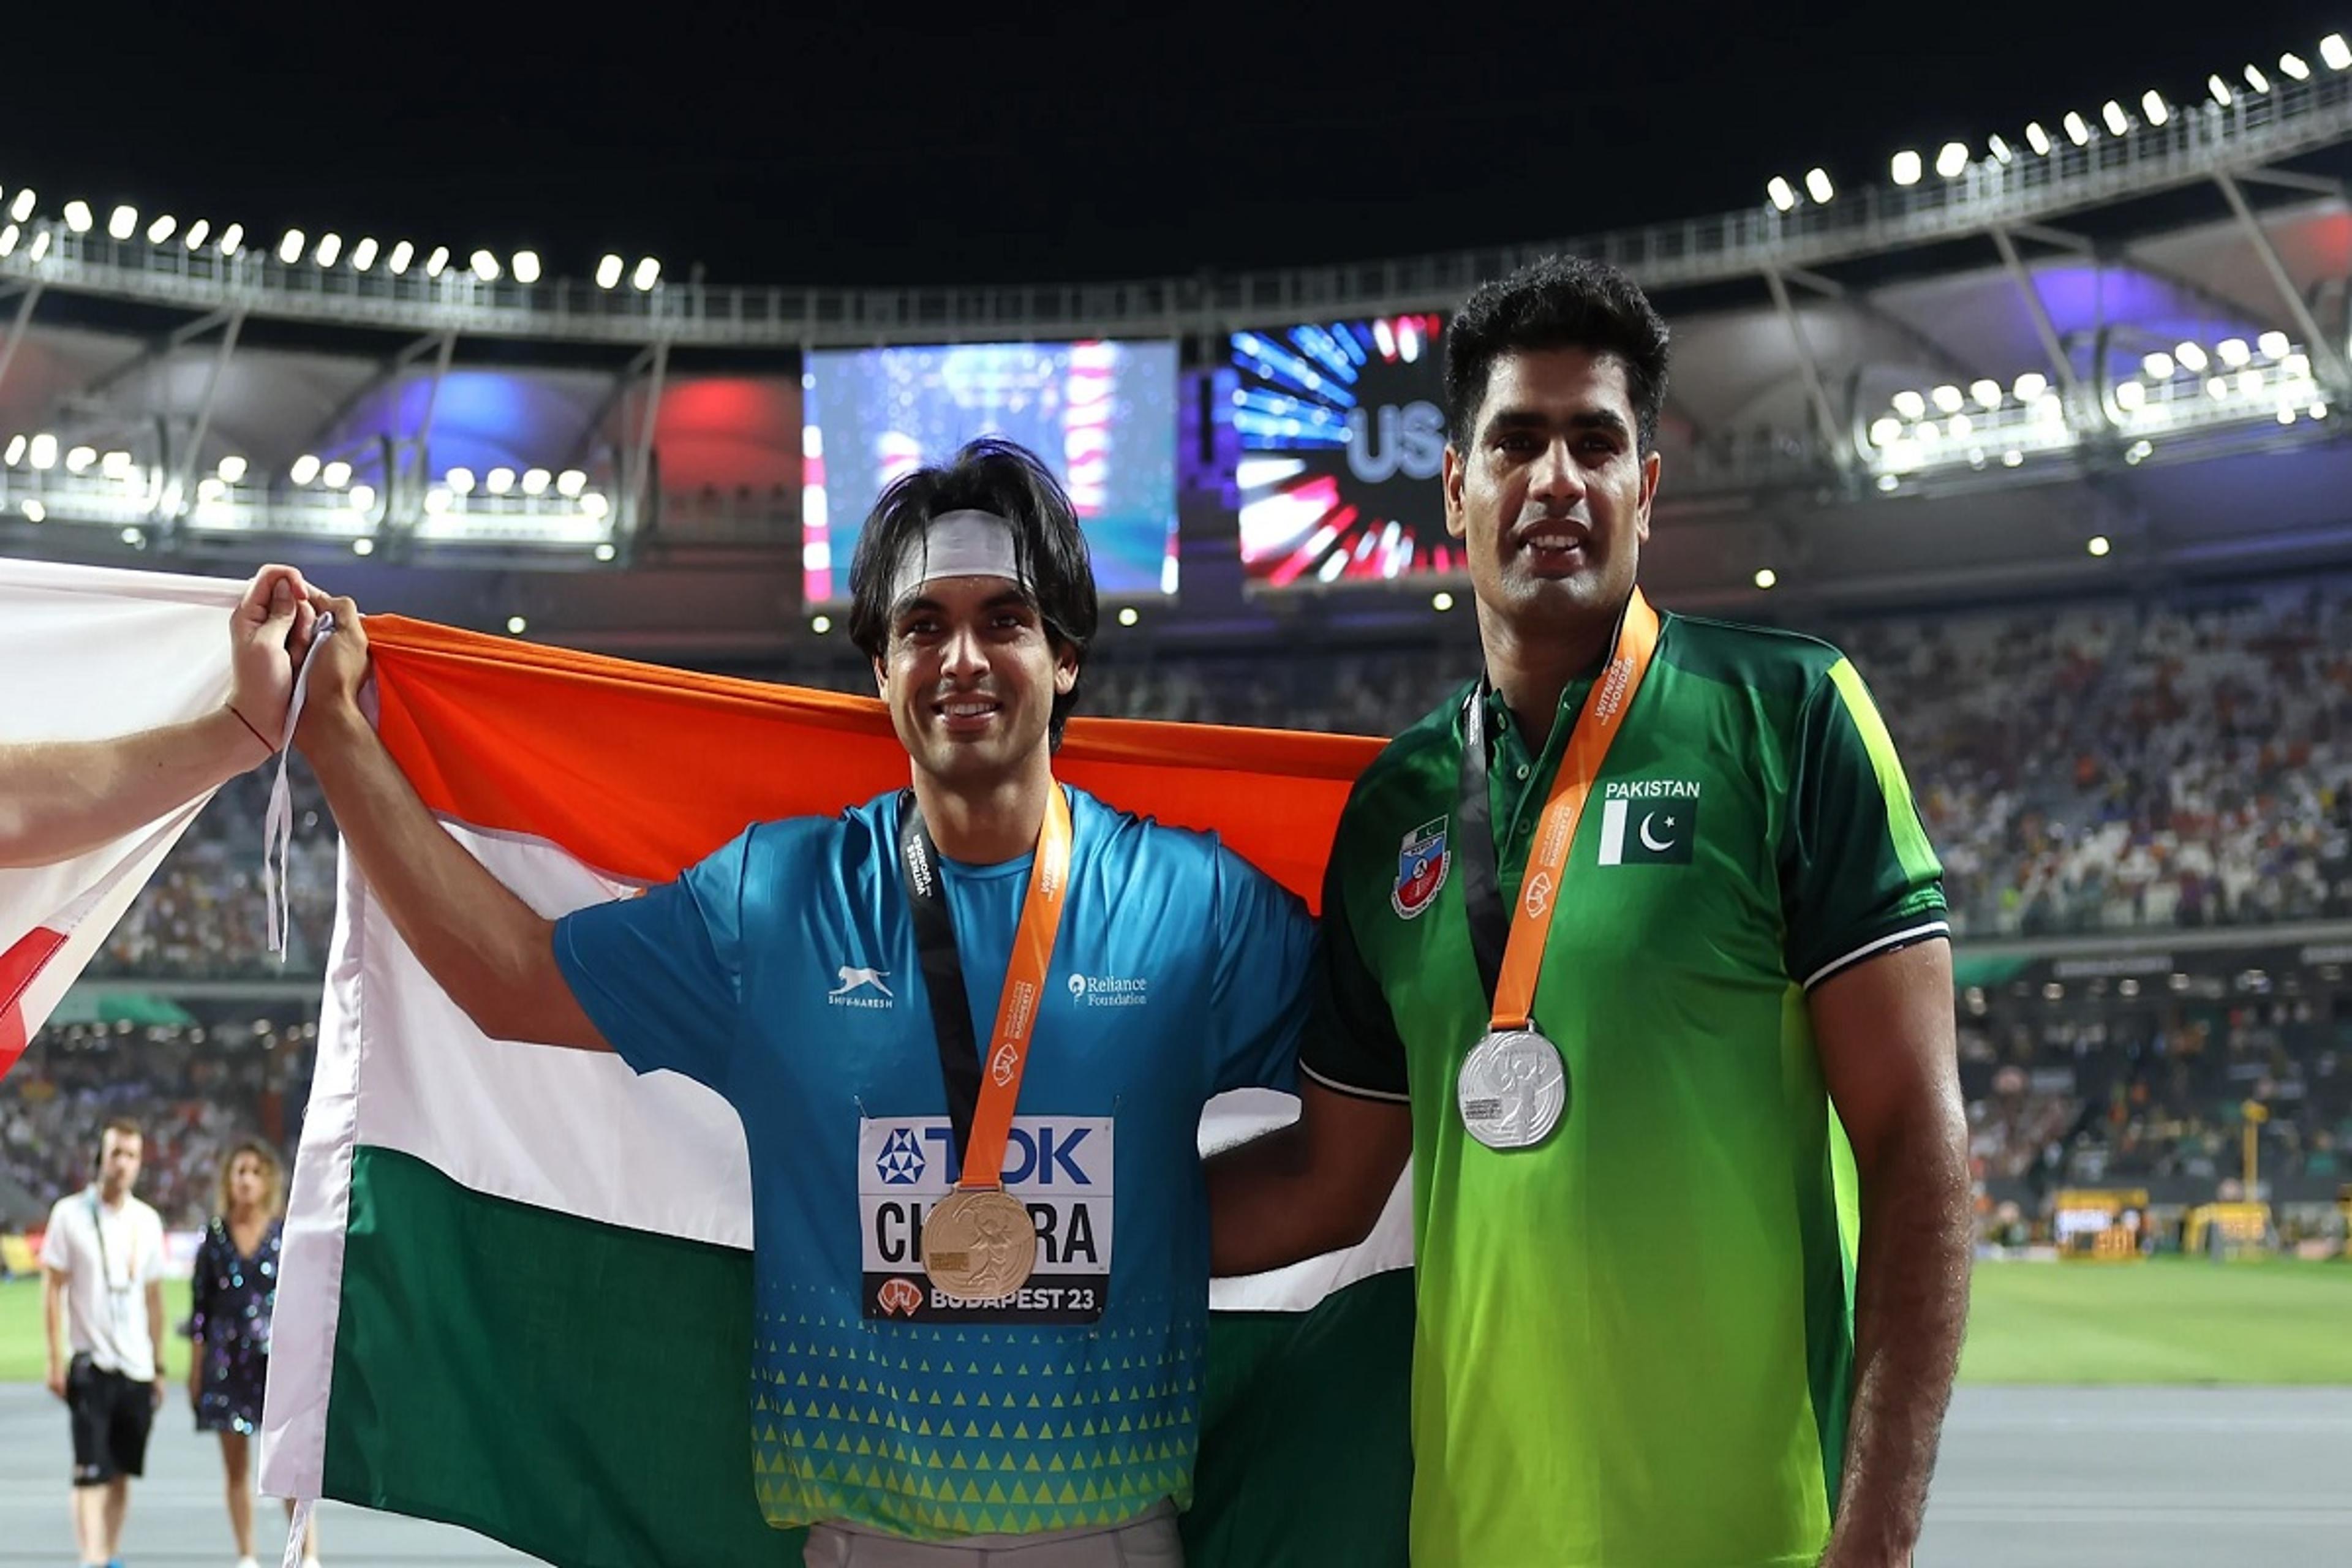 नीरज चोपड़ा की बड़ी भविष्यवाणी, पेरिस ओलंपिक में भाला फेंक में तीन भारतीय पदक की
दौड़ में होंगे